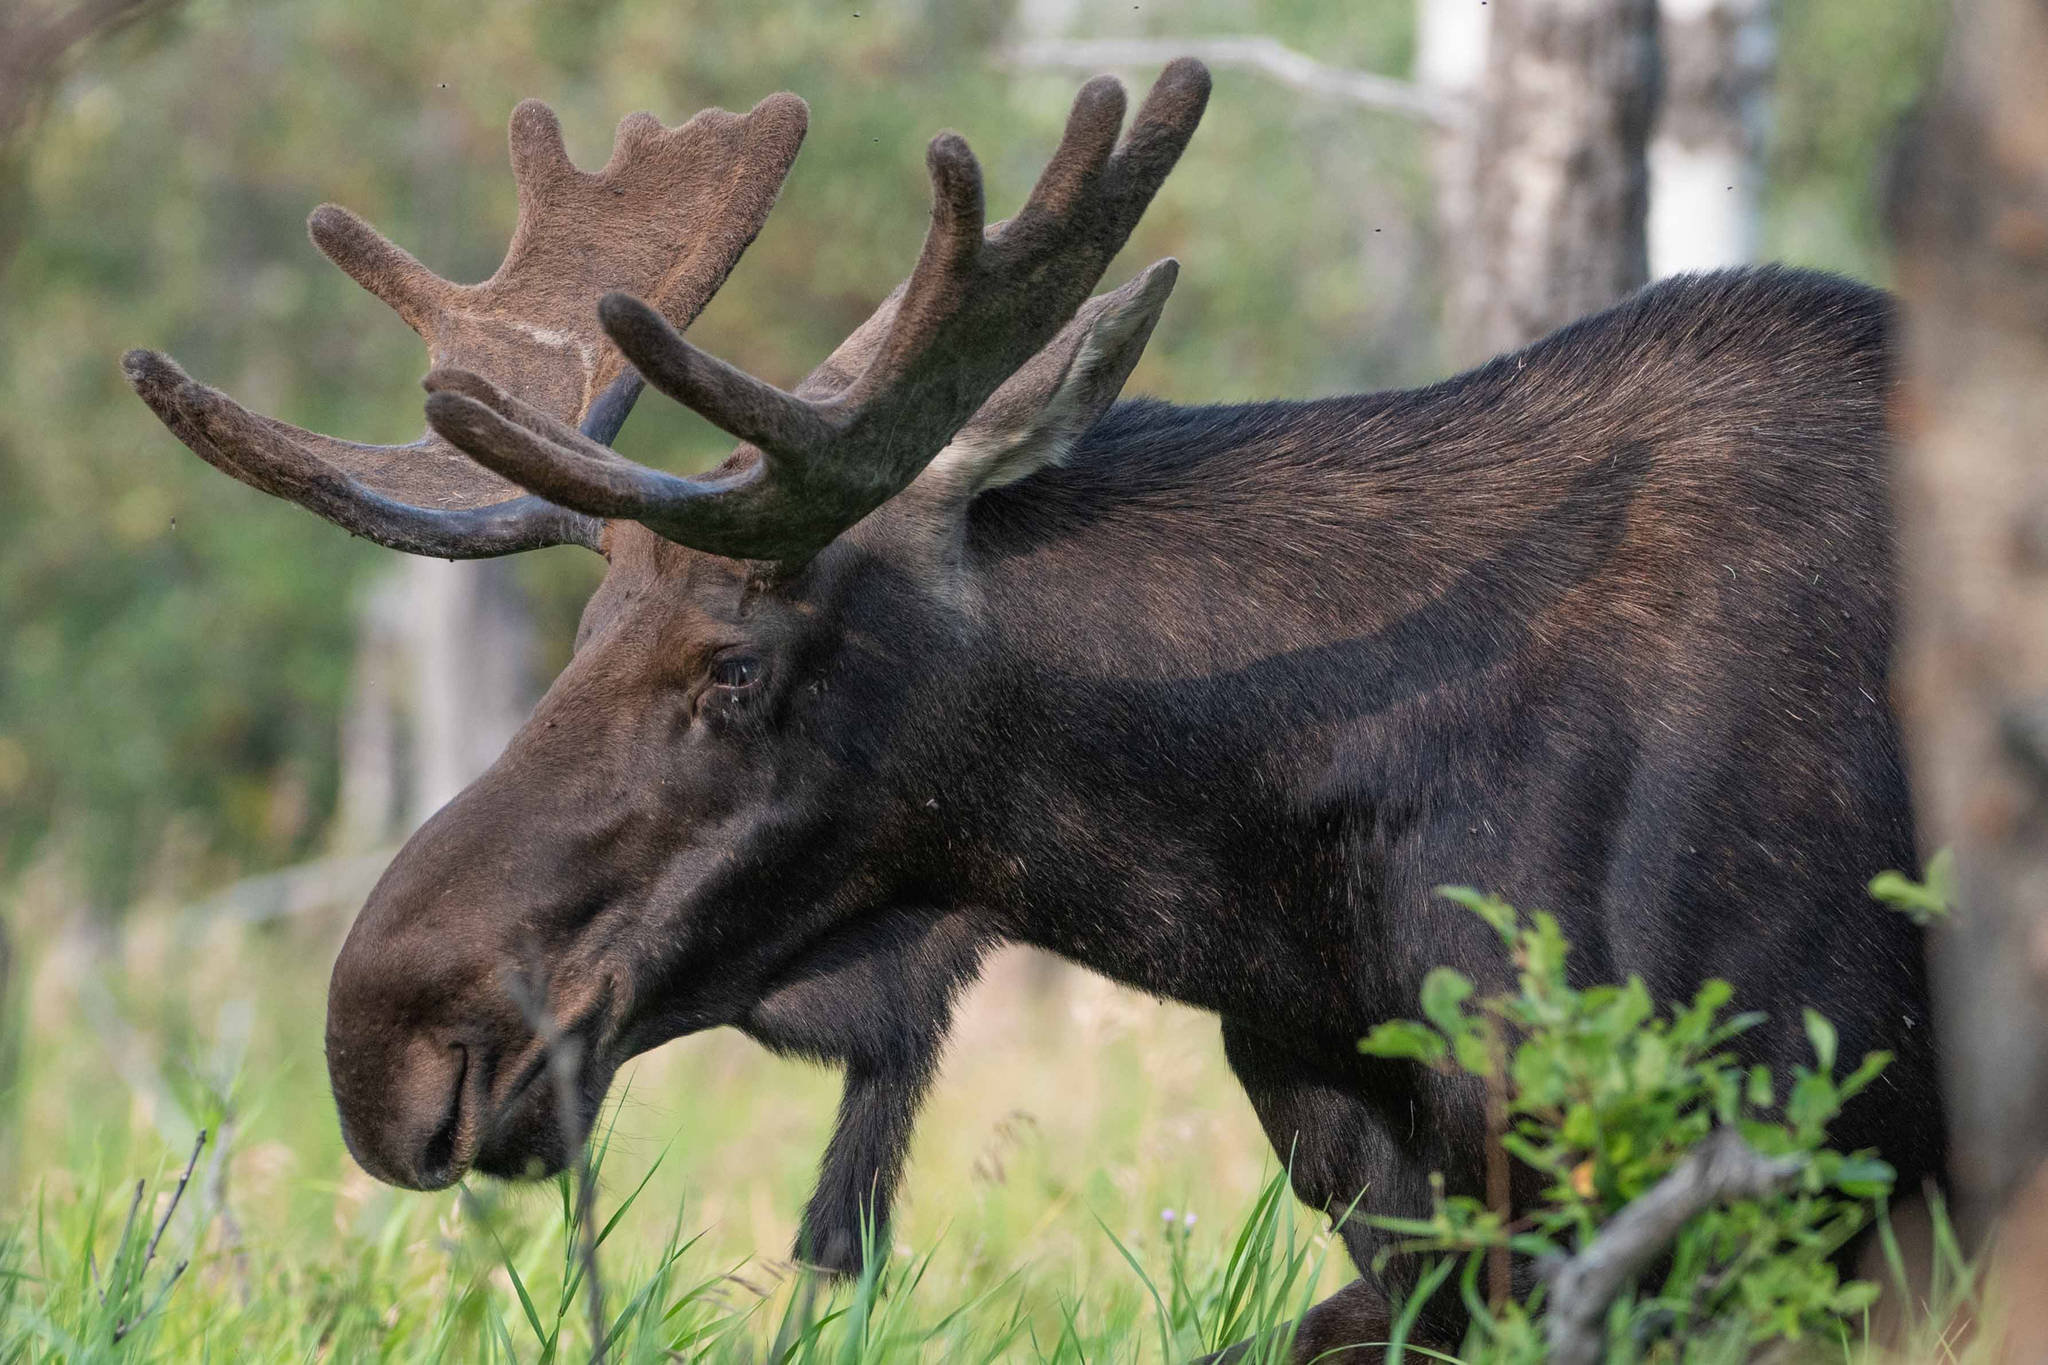 Alaska moose hunter can ‘rev up’ his hovercraft, U.S. Supreme Court rules